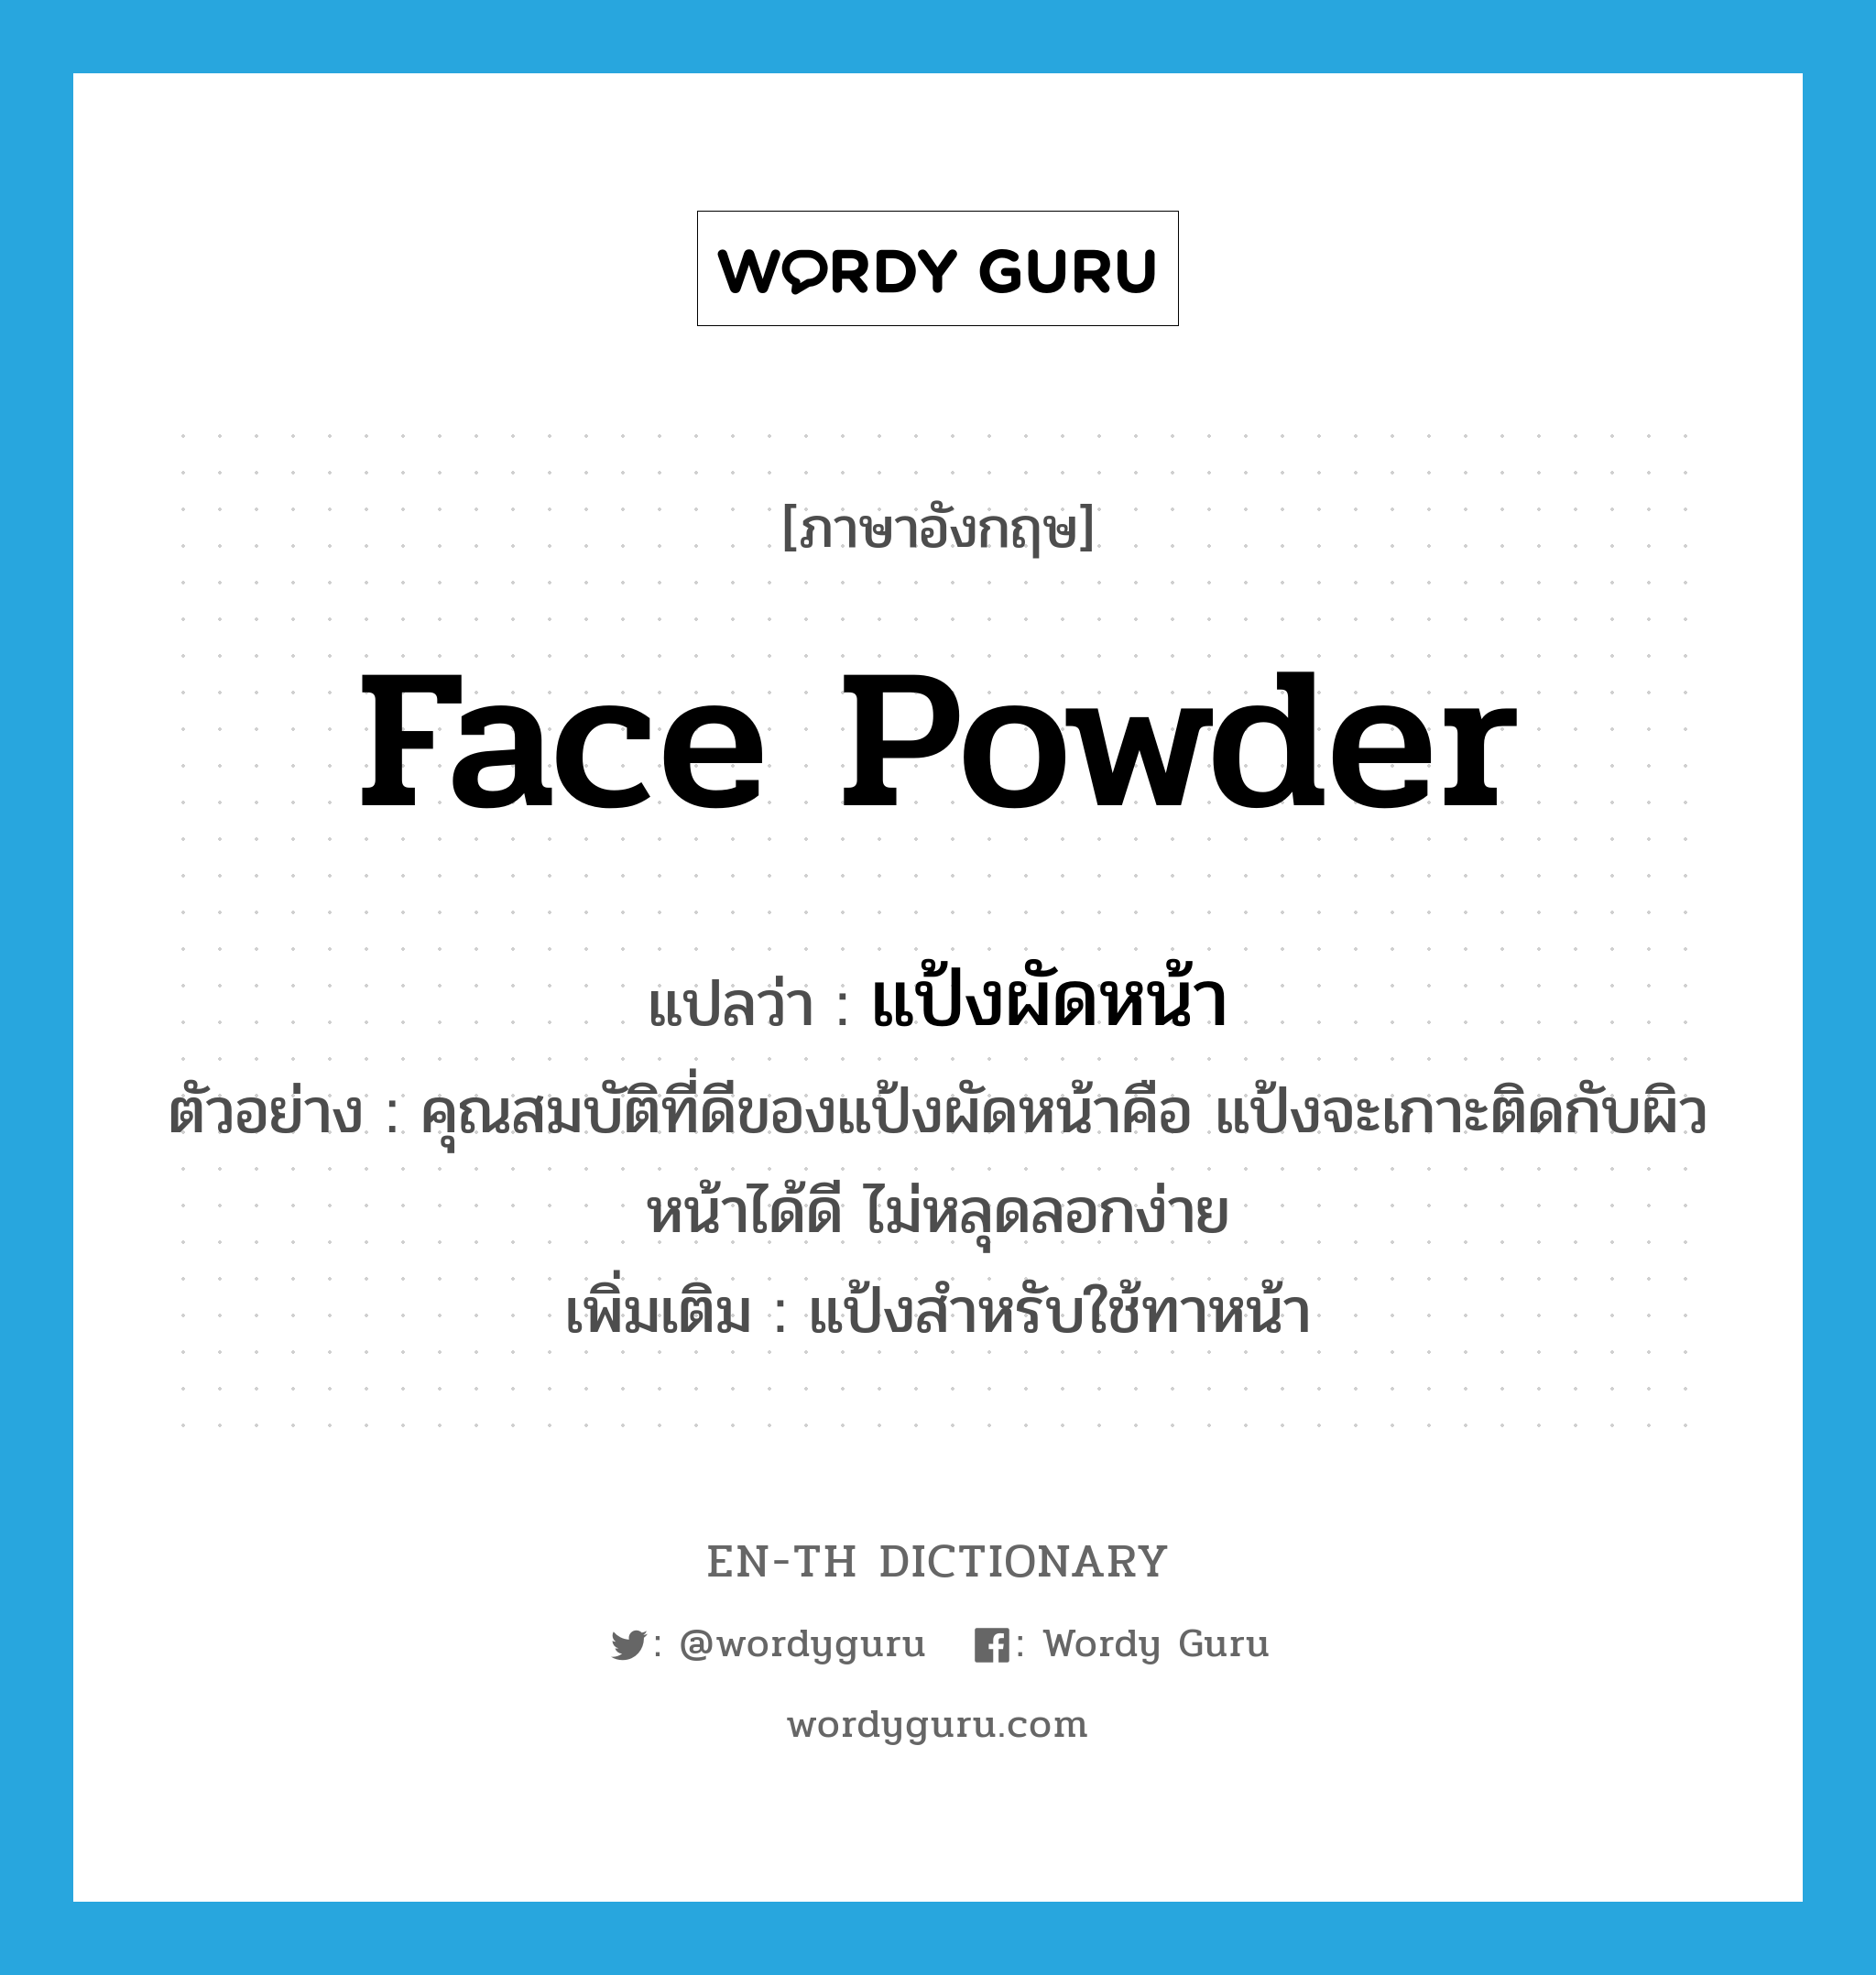 face powder แปลว่า?, คำศัพท์ภาษาอังกฤษ face powder แปลว่า แป้งผัดหน้า ประเภท N ตัวอย่าง คุณสมบัติที่ดีของแป้งผัดหน้าคือ แป้งจะเกาะติดกับผิวหน้าได้ดี ไม่หลุดลอกง่าย เพิ่มเติม แป้งสำหรับใช้ทาหน้า หมวด N